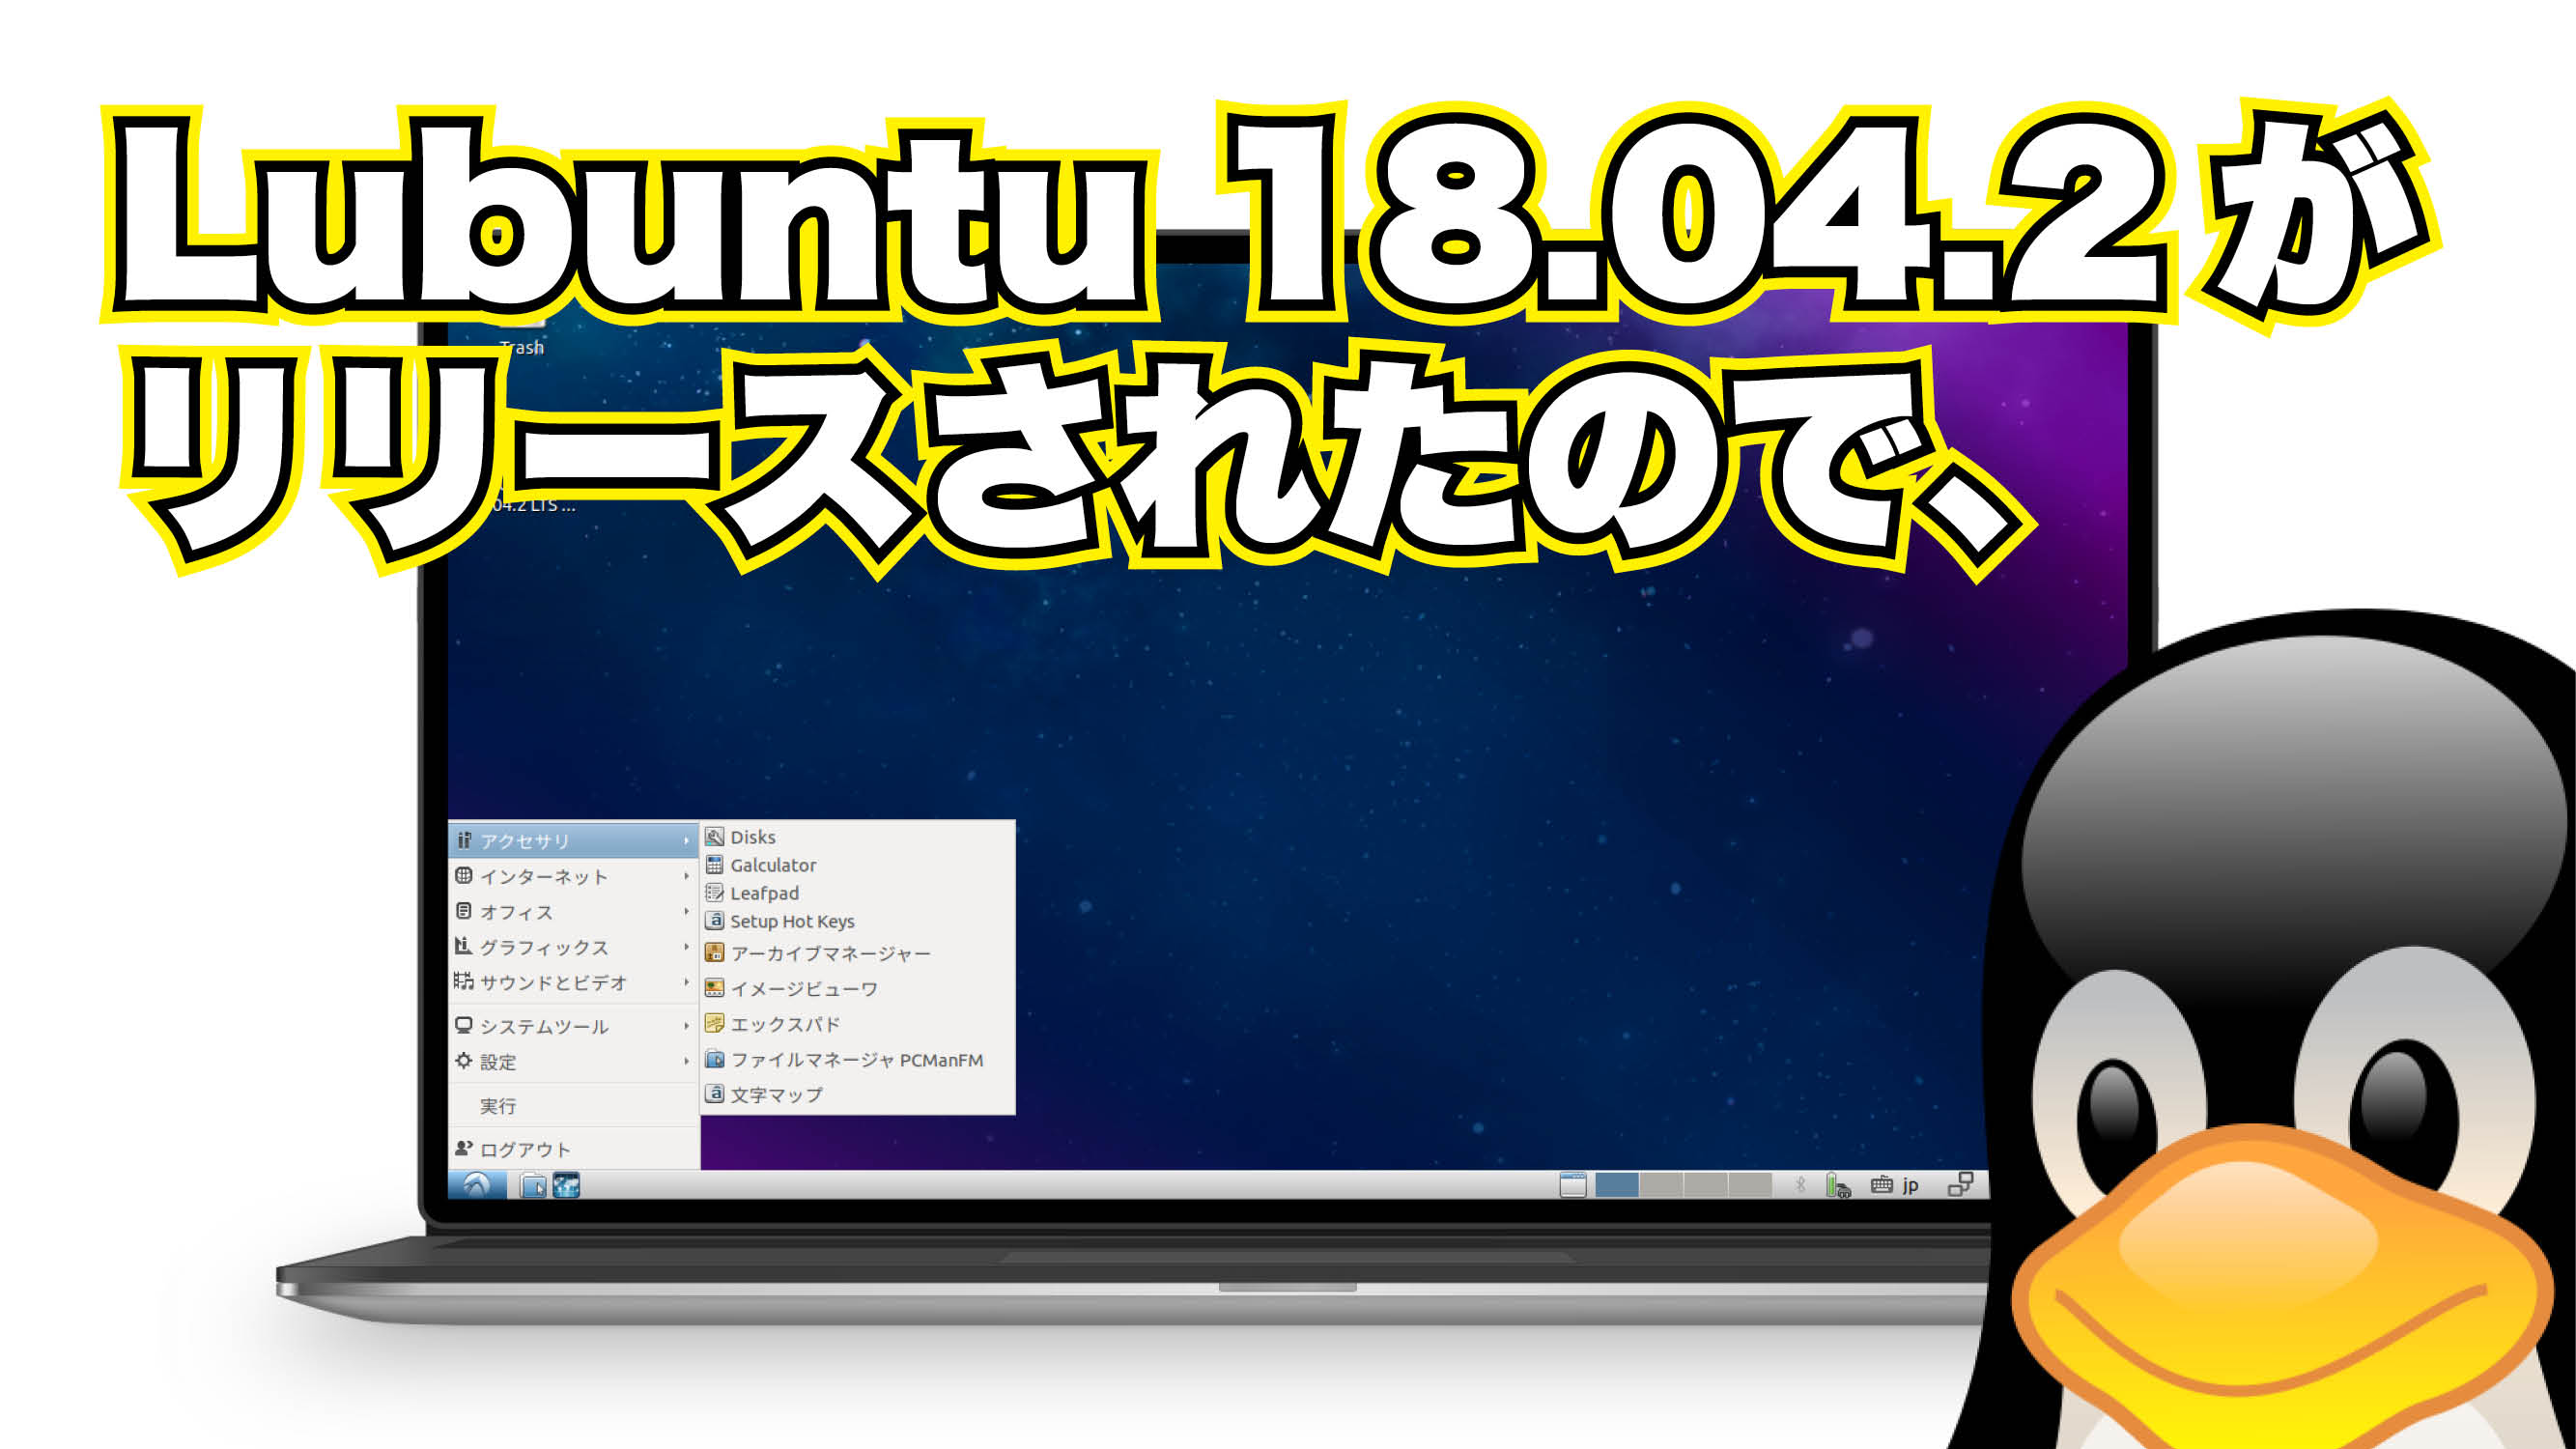 Lubuntu 18.04.2 がリリースされたので、